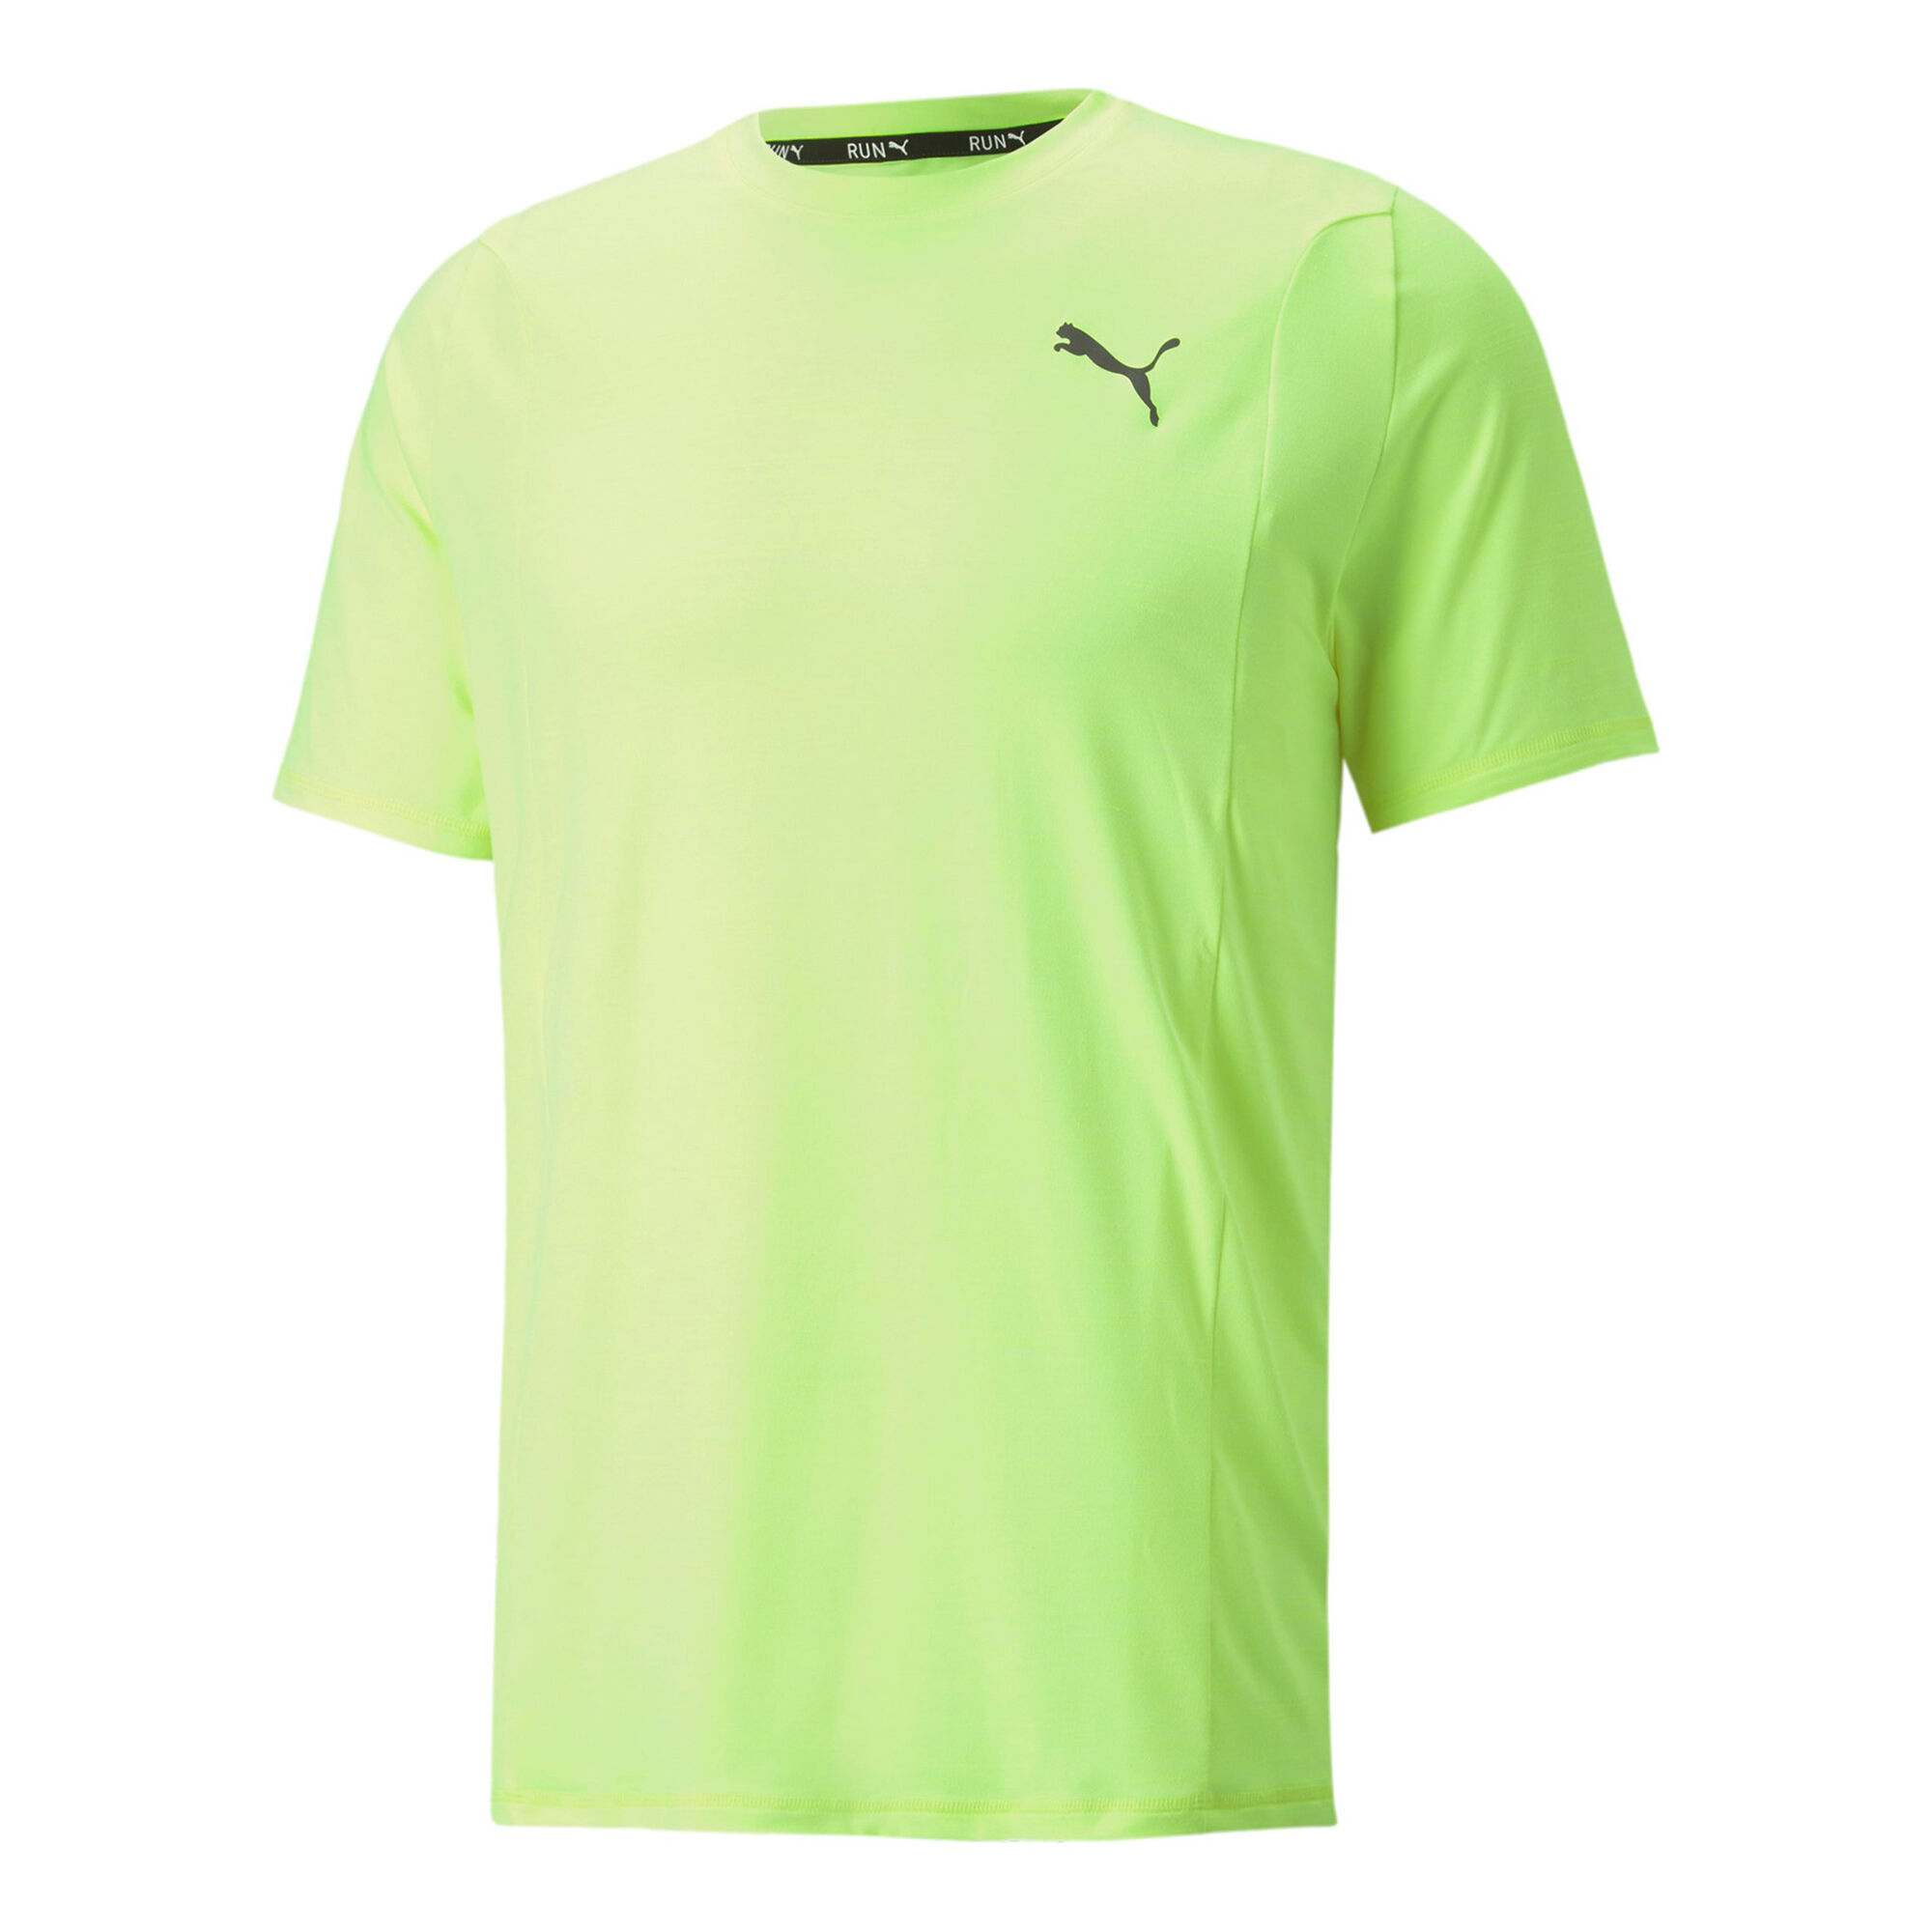 Neon Running Point online Buy COM Puma Running T-Shirt Men Shirts Cloudspun Green |